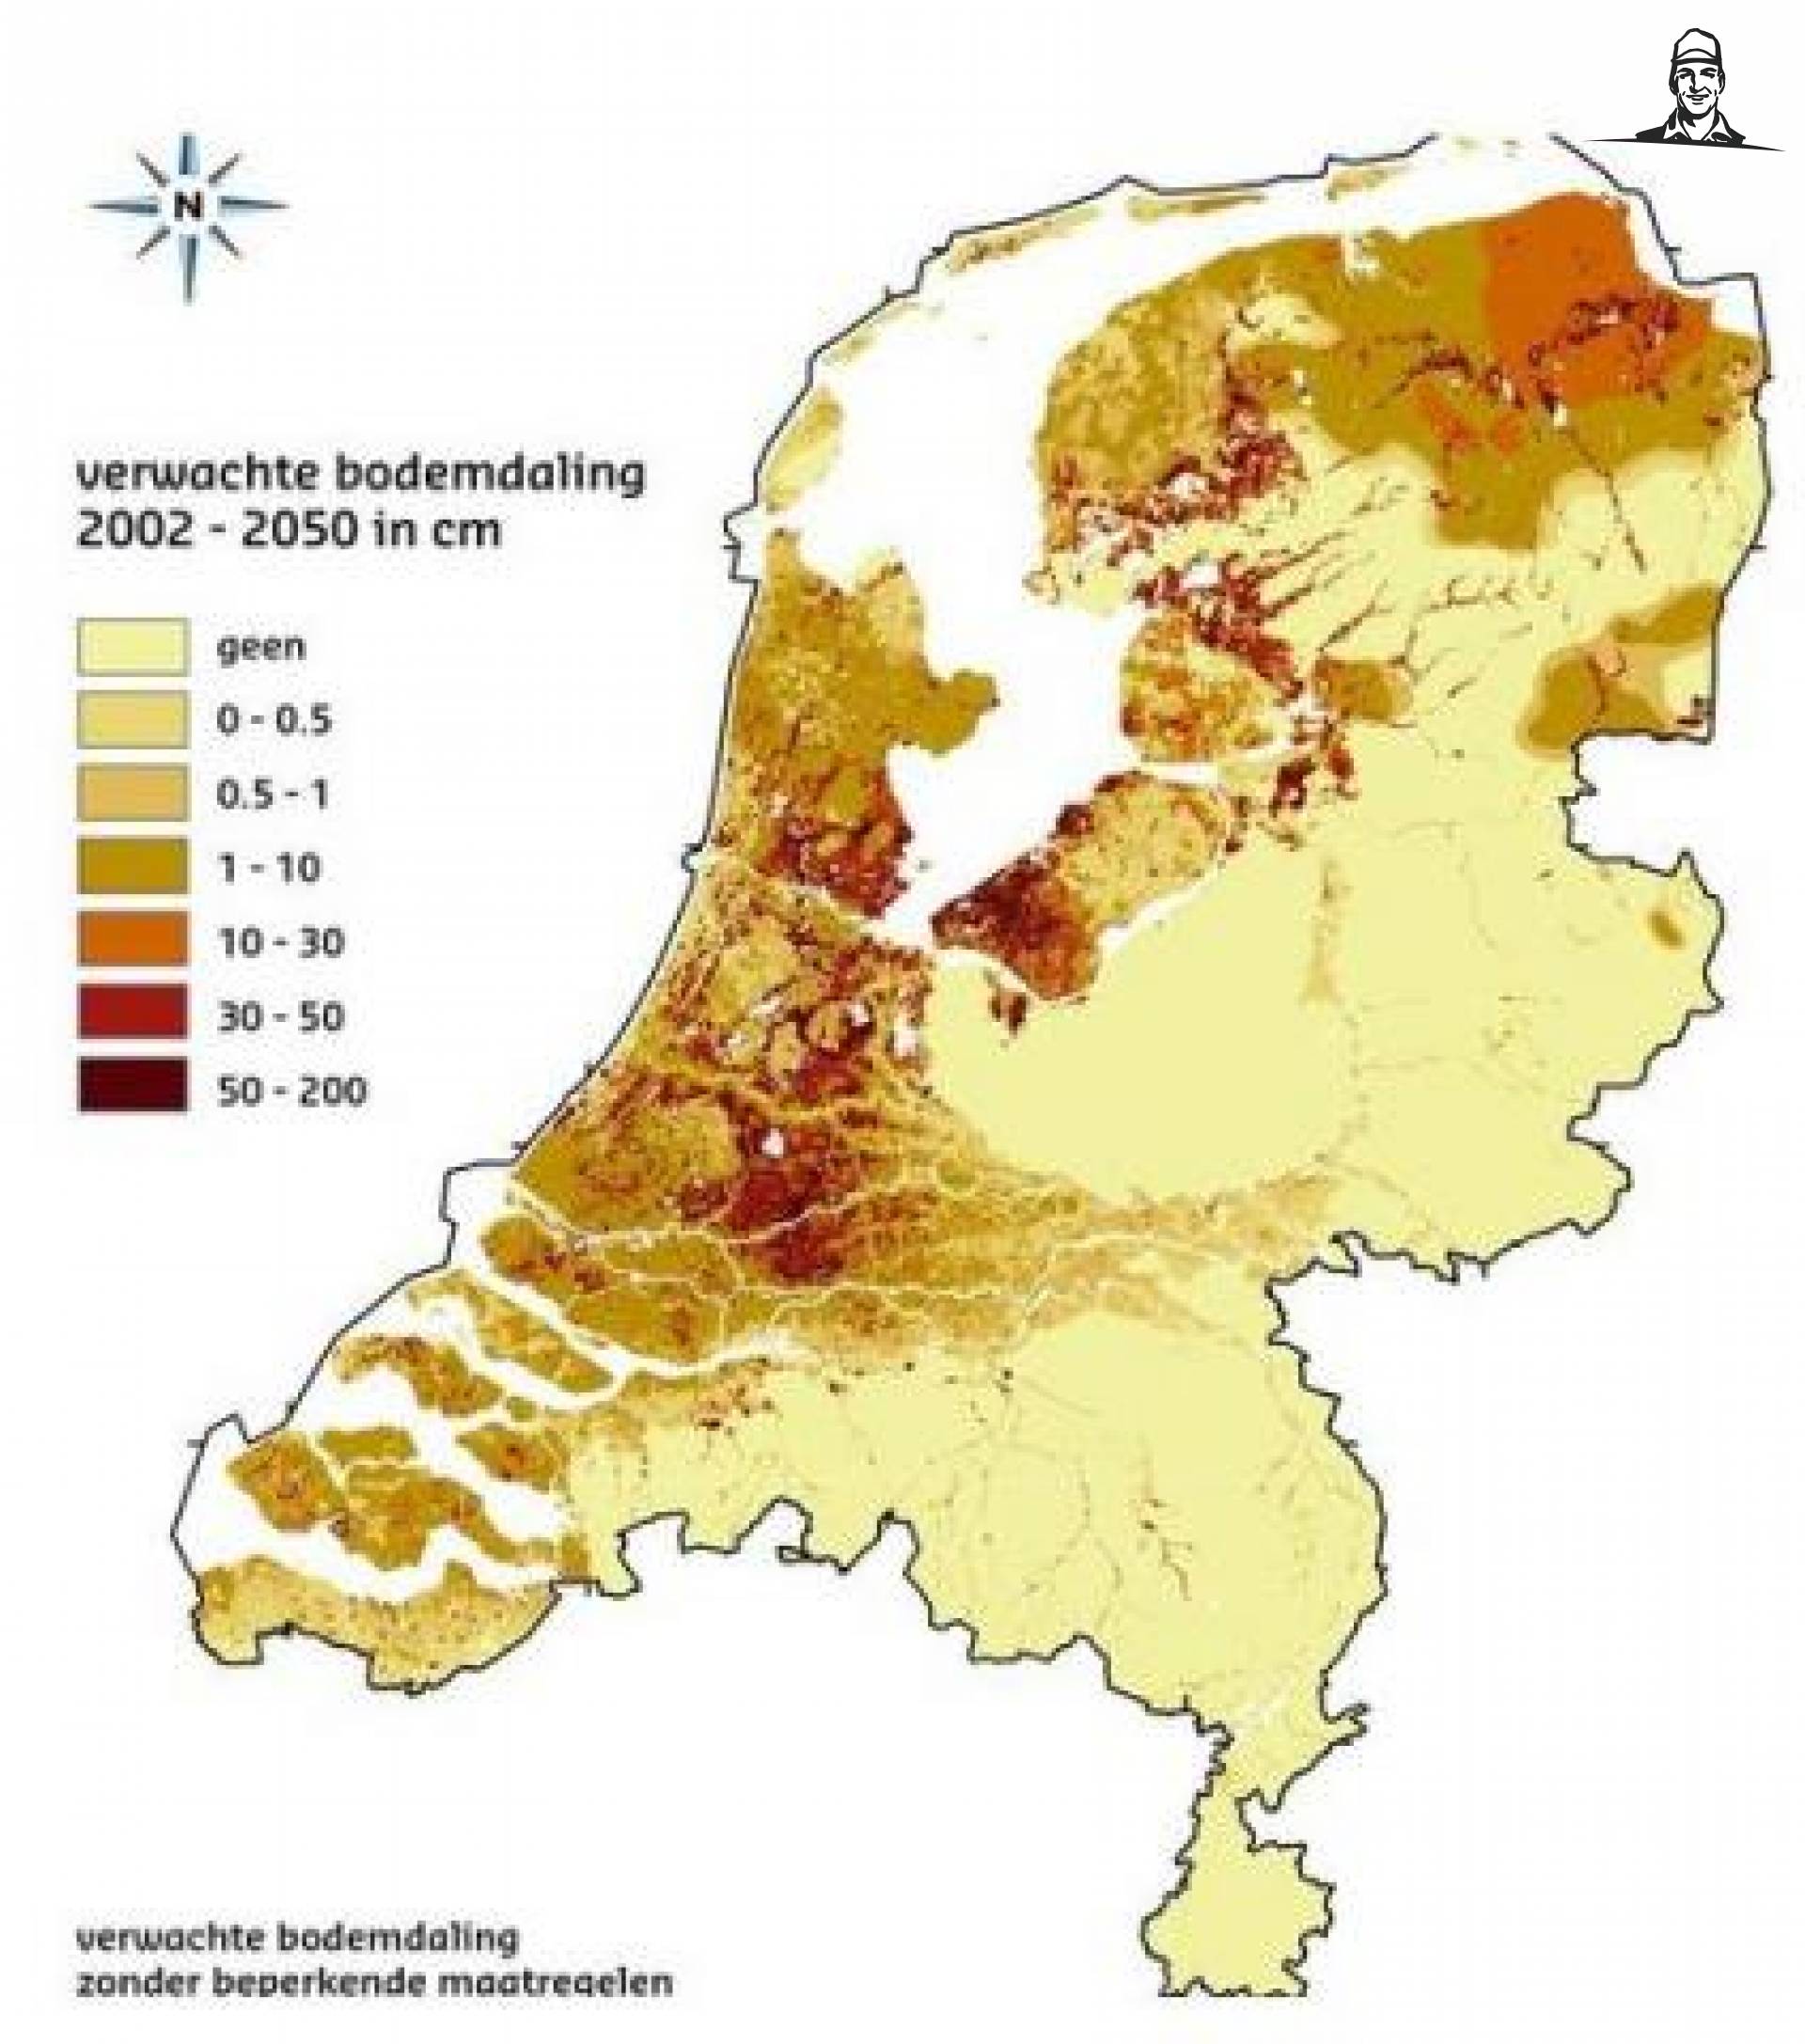 Nieuwe kaart laat bodemdaling in Nederland zien van Grasbaal